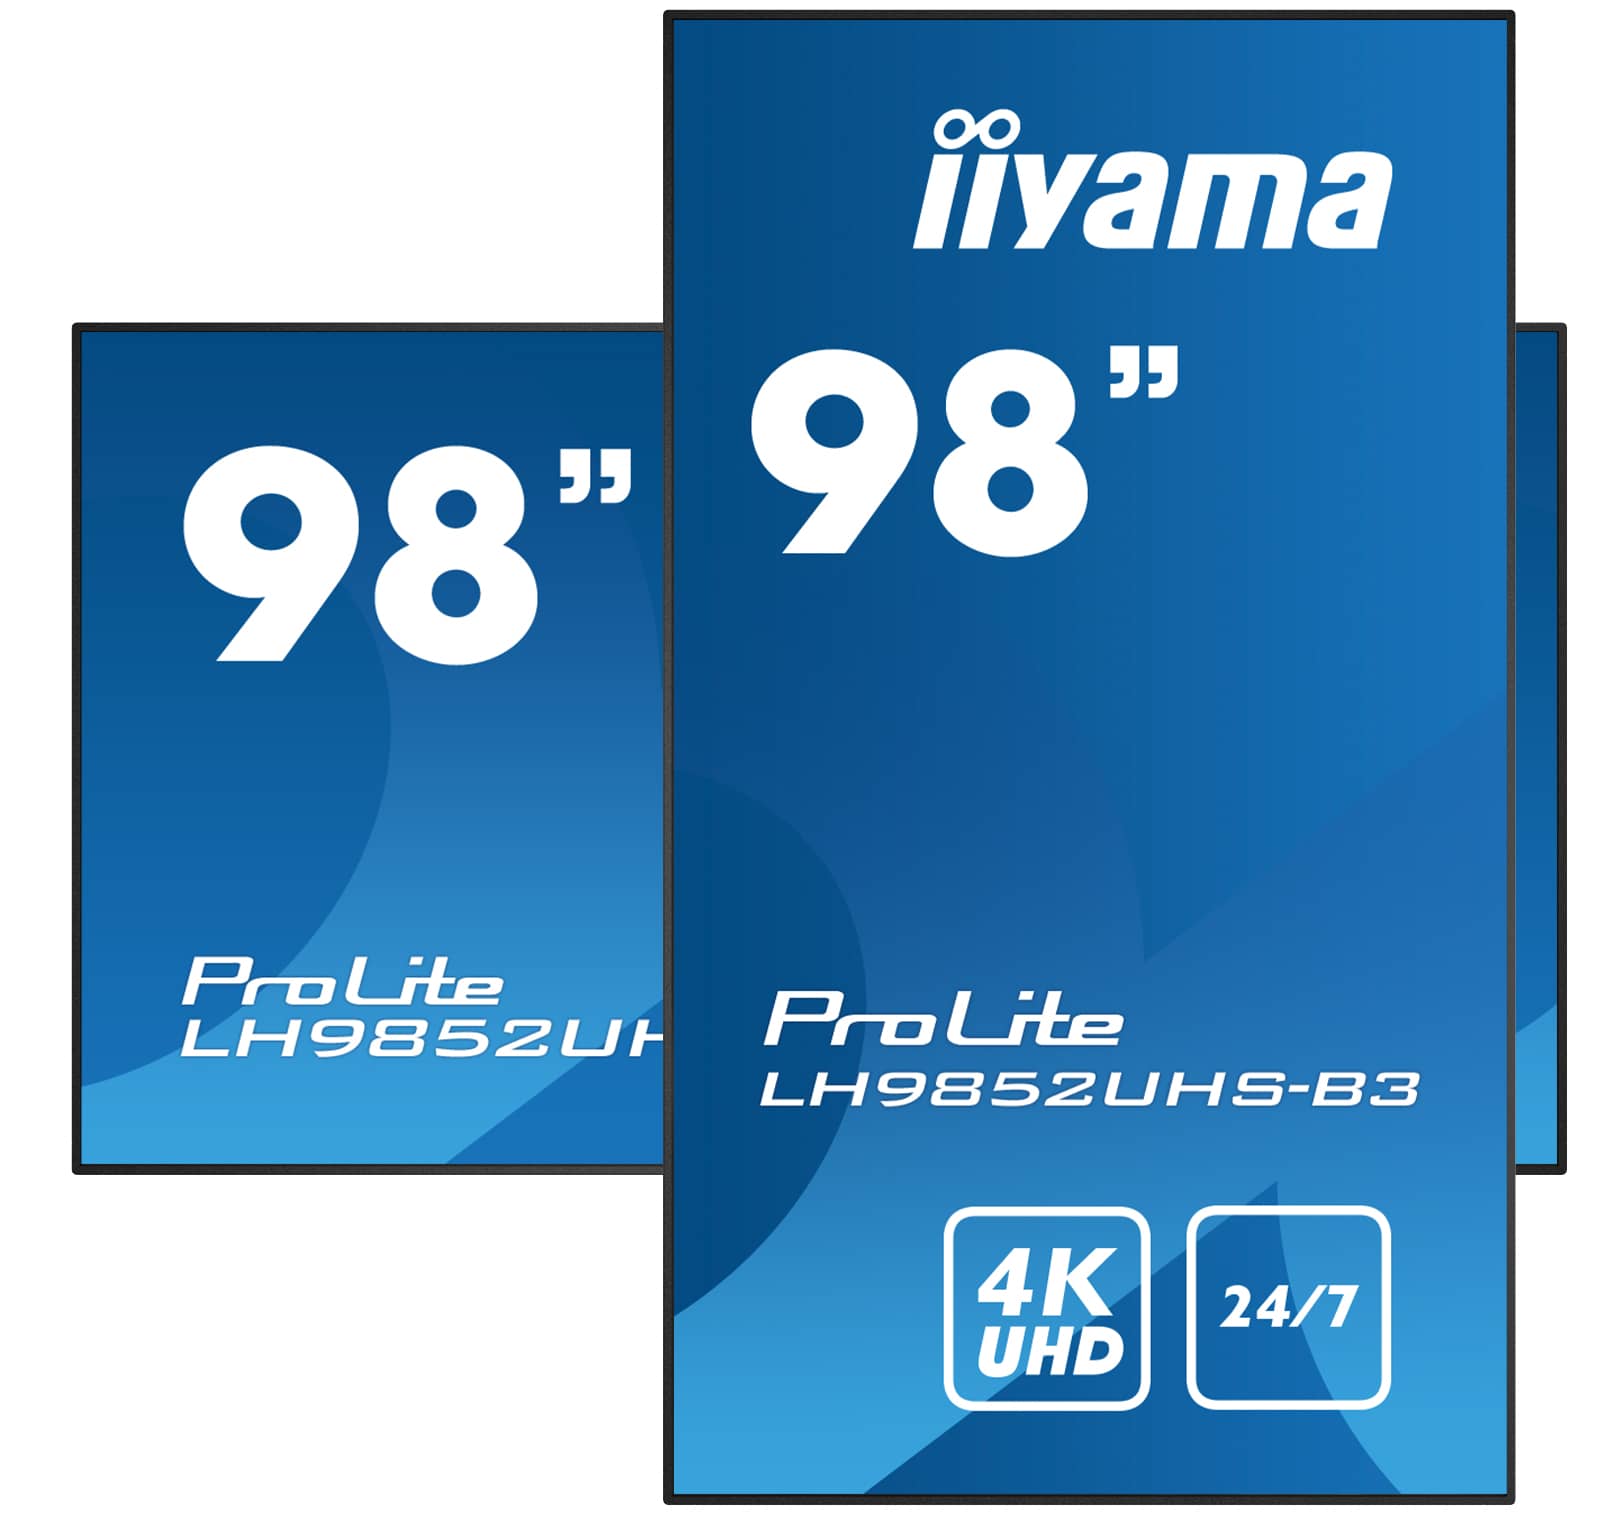 Iiyama ProLite LH9852UHS-B3 | Ein ᠎98" Digital Signage Display mit 4K UHD-Auflösung